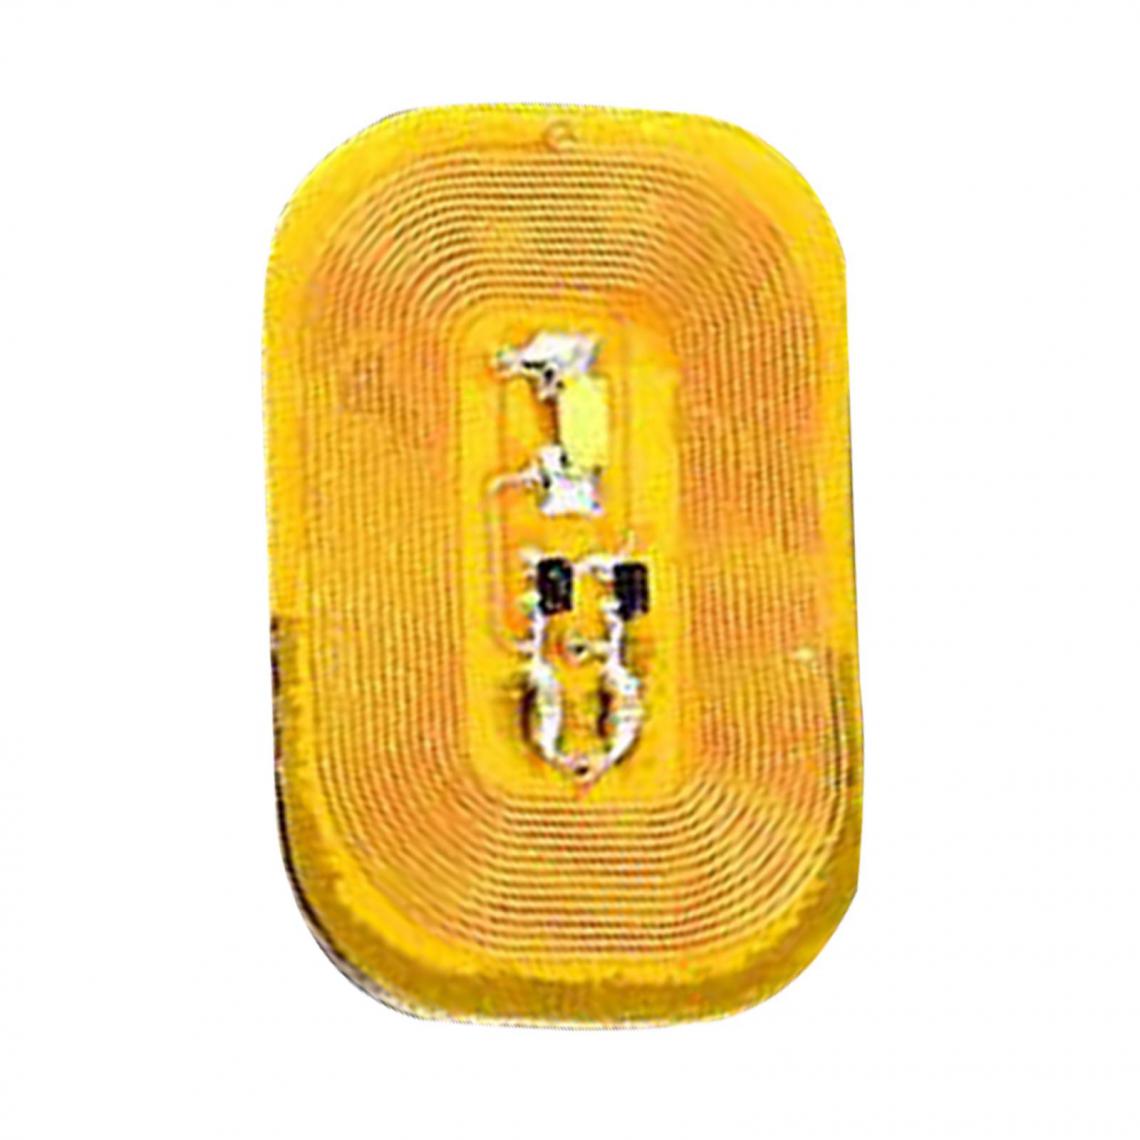 marque generique - Femmes DIY Lumineux NFC Ongle Autocollant Puce Mobile Capteurs Blanc Lumière, 1.1x0.7cm - Clouterie